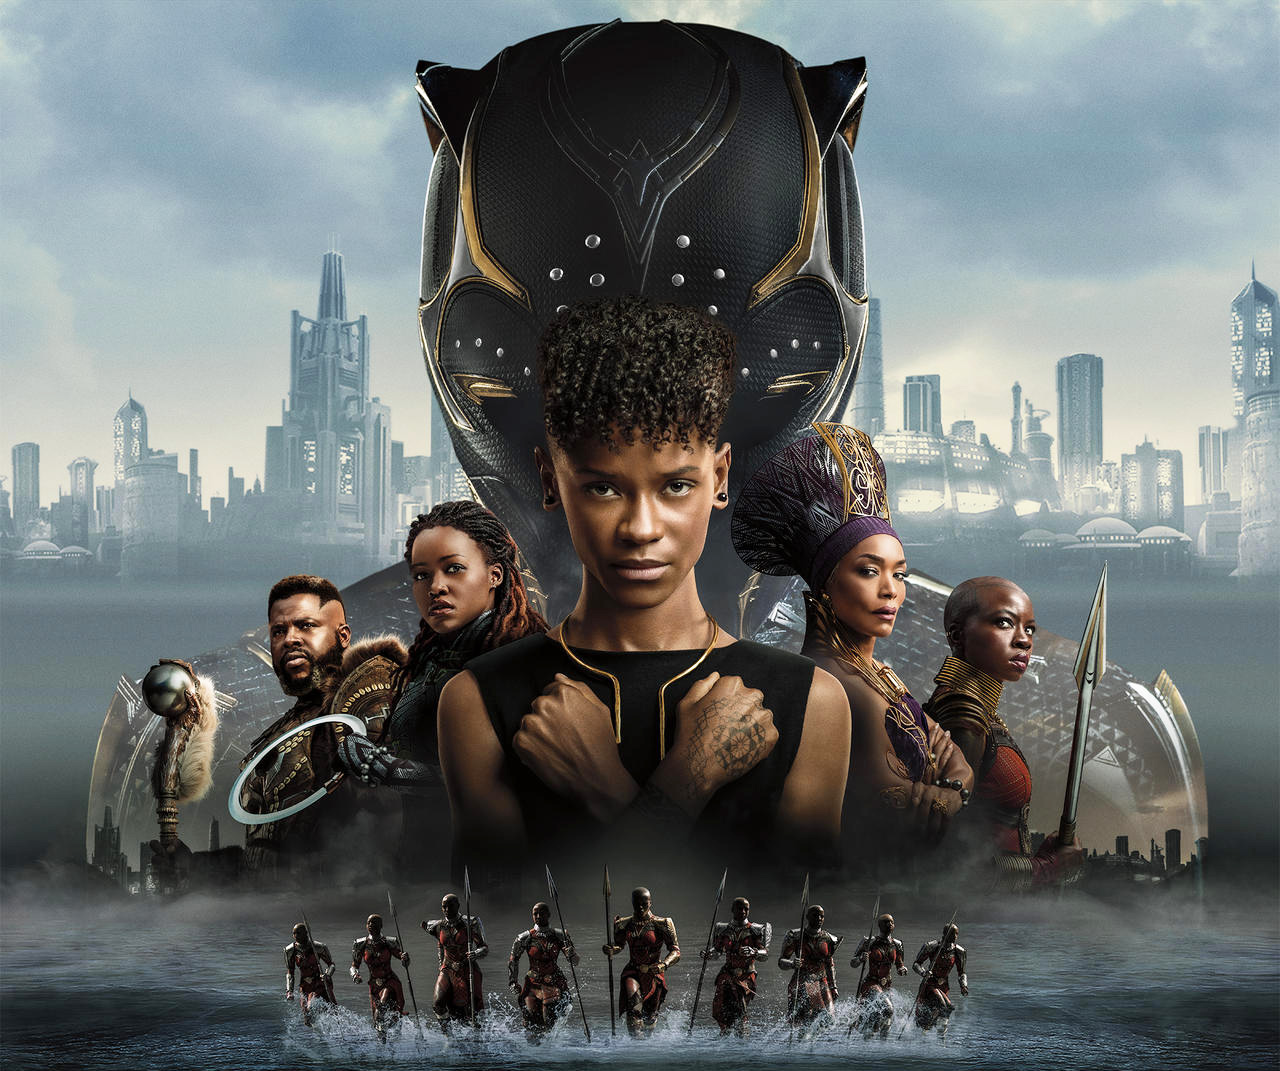 Filmes: “Pantera Negra 2” chega ao streaming. Veja as novidades - Pipoca  Moderna